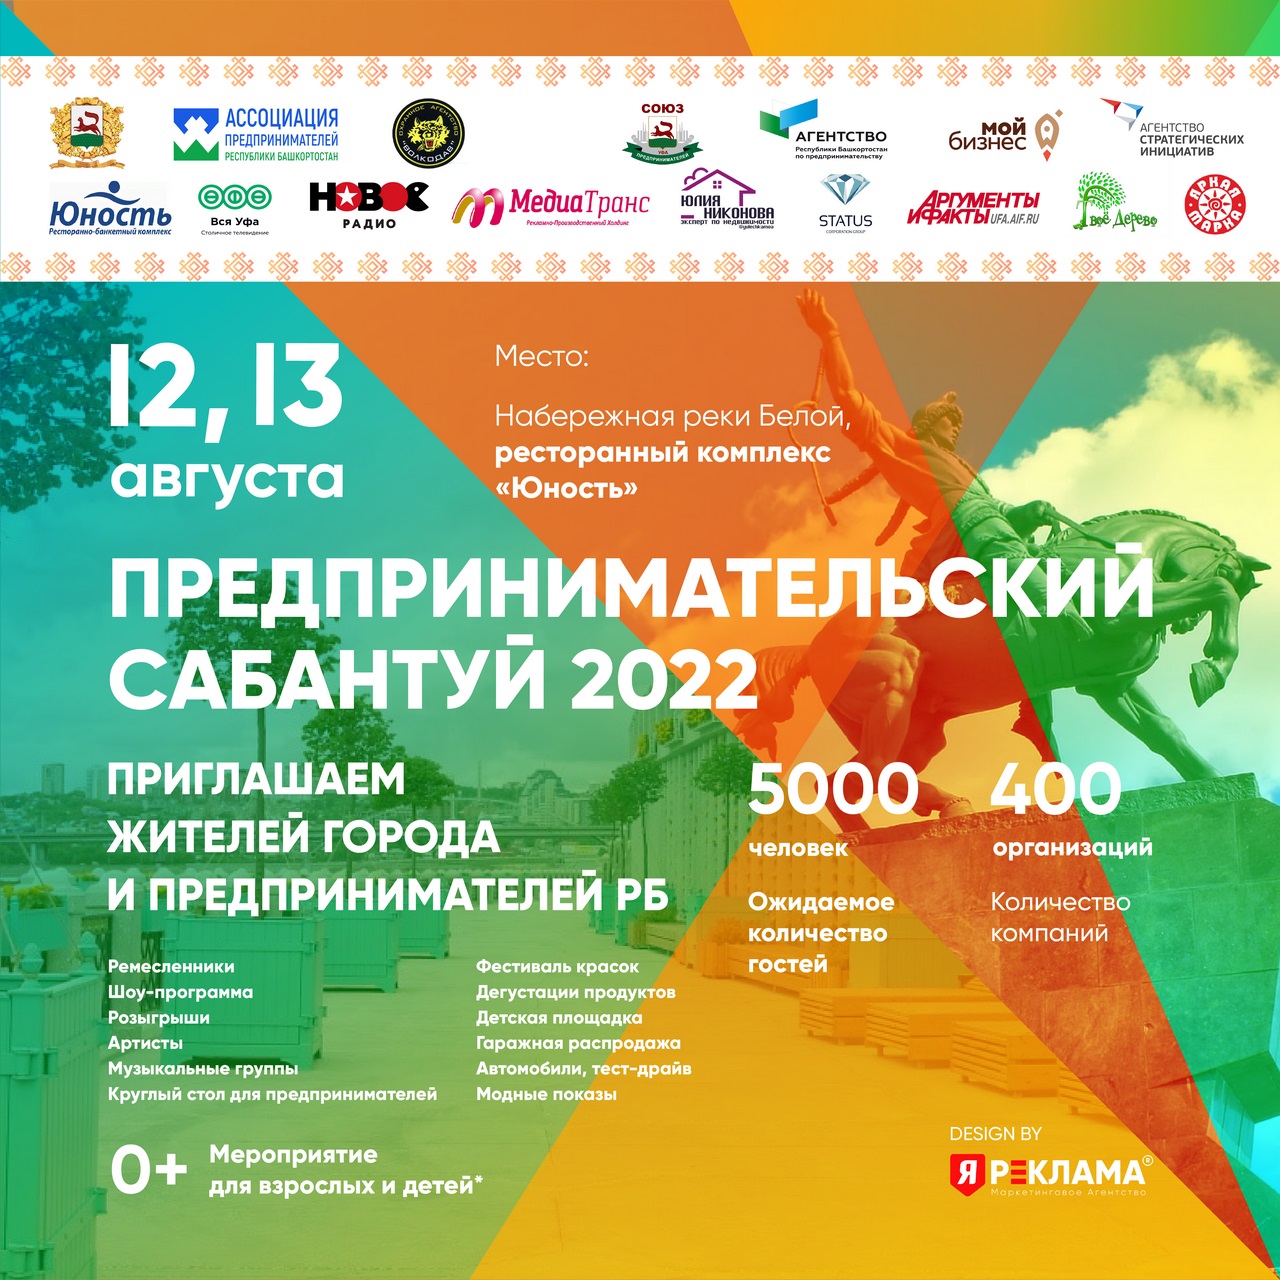 Уфа встречает «Предпринимательский сабантуй - 2022»